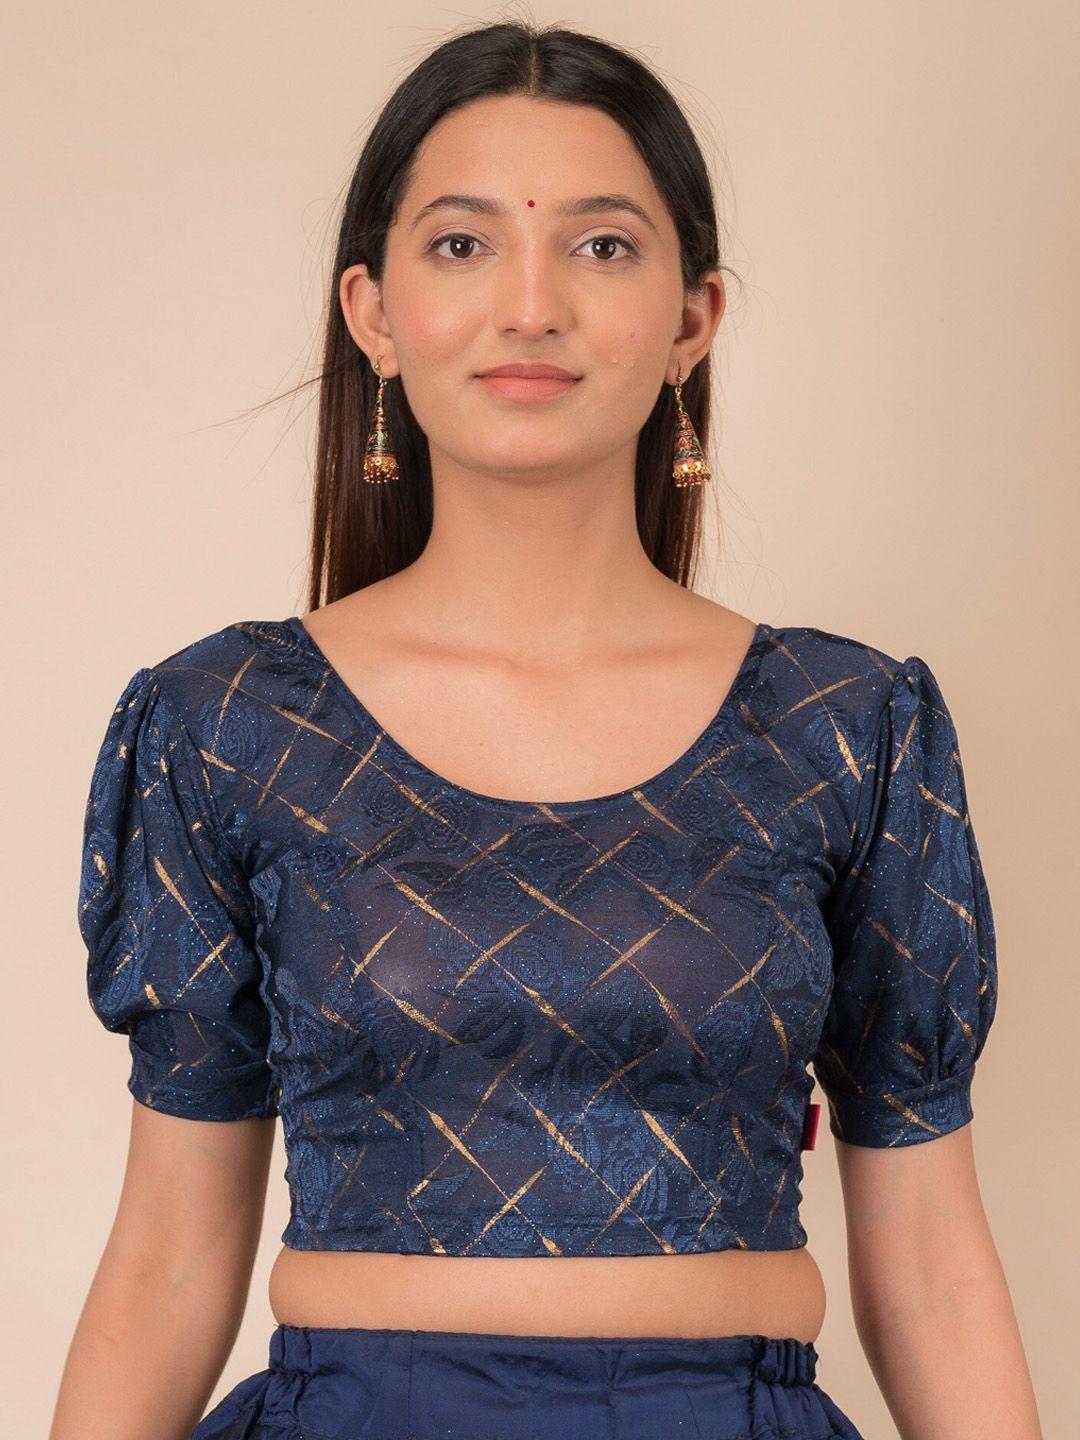 bindigasm's advi embellished puff sleeves stretchable jacquard saree blouse